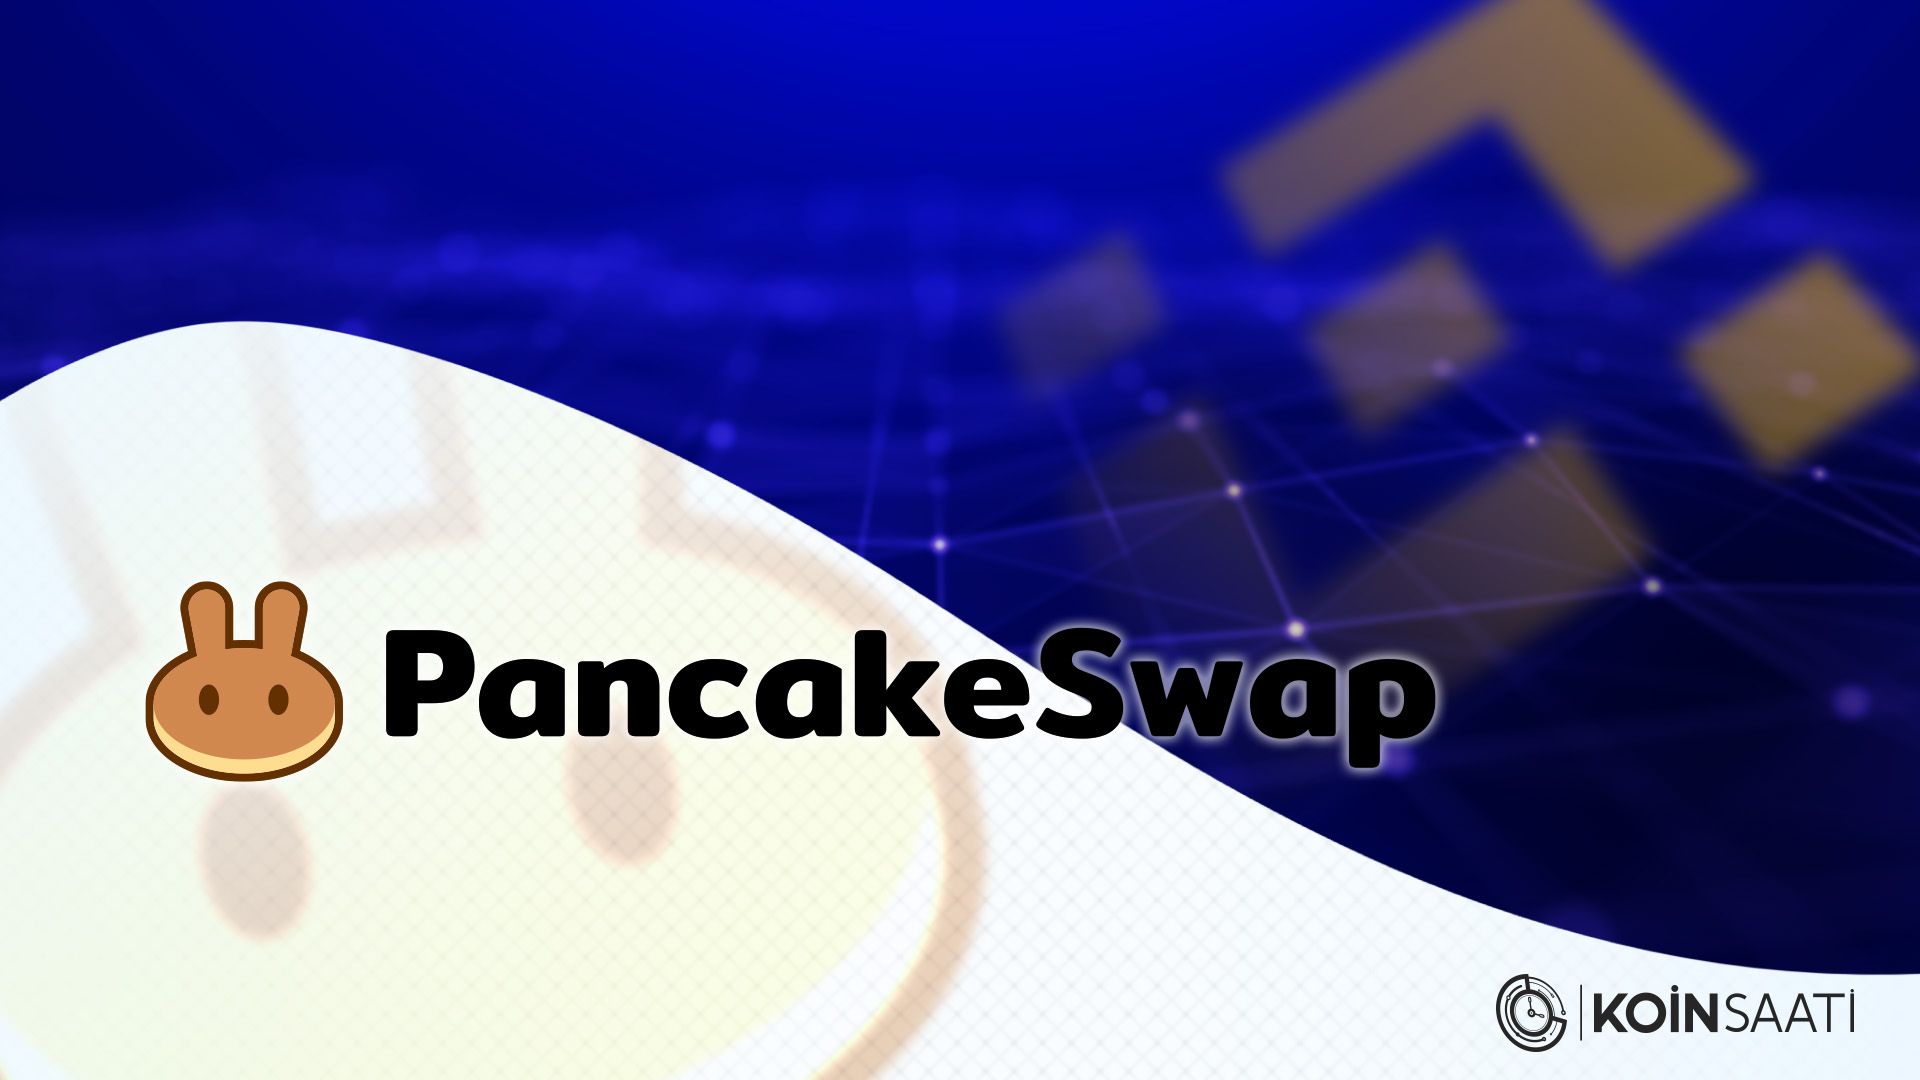 PancakeSwap (CAKE)